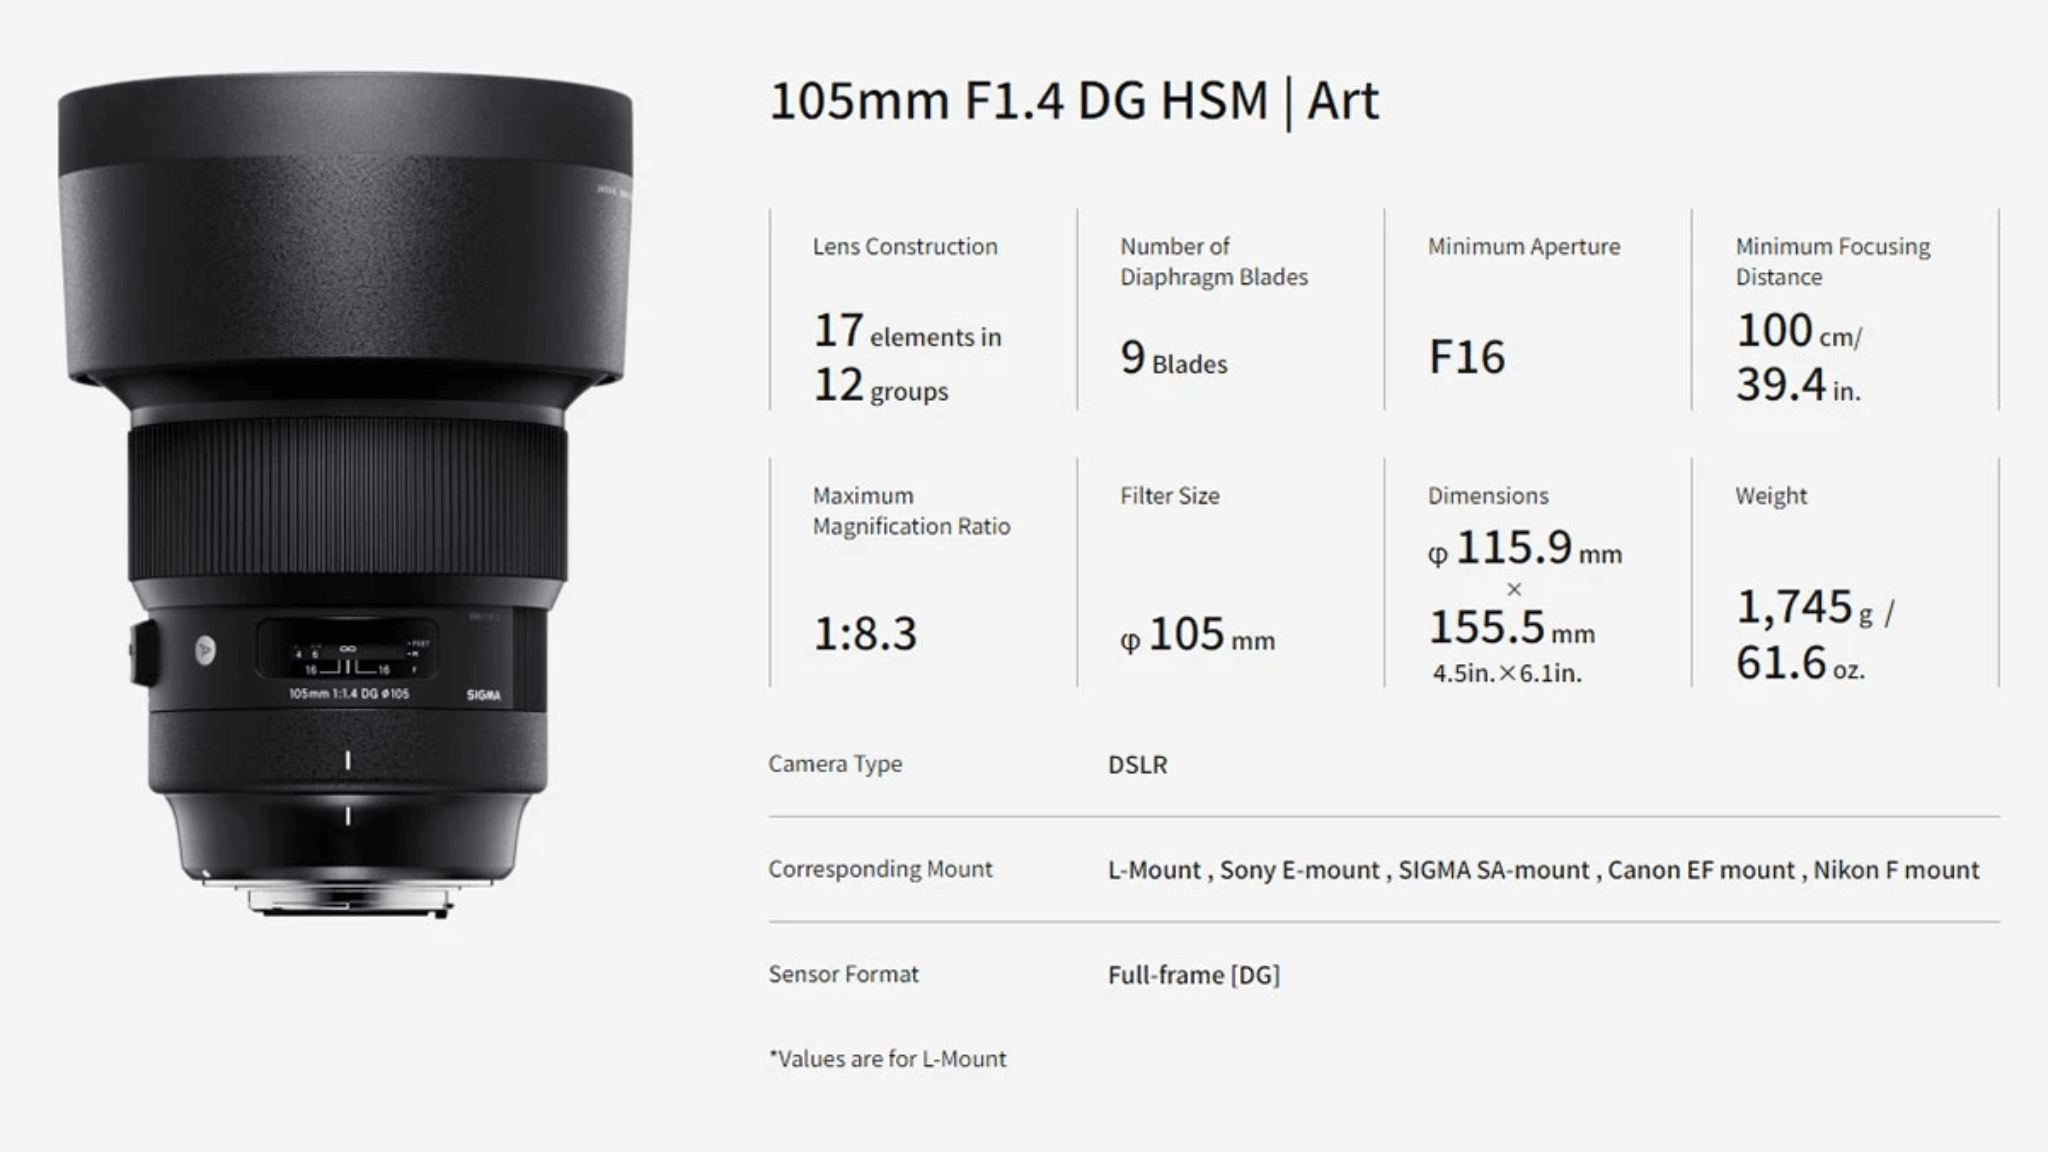 SIGMA 105mm F1.4 DG HSM | Art